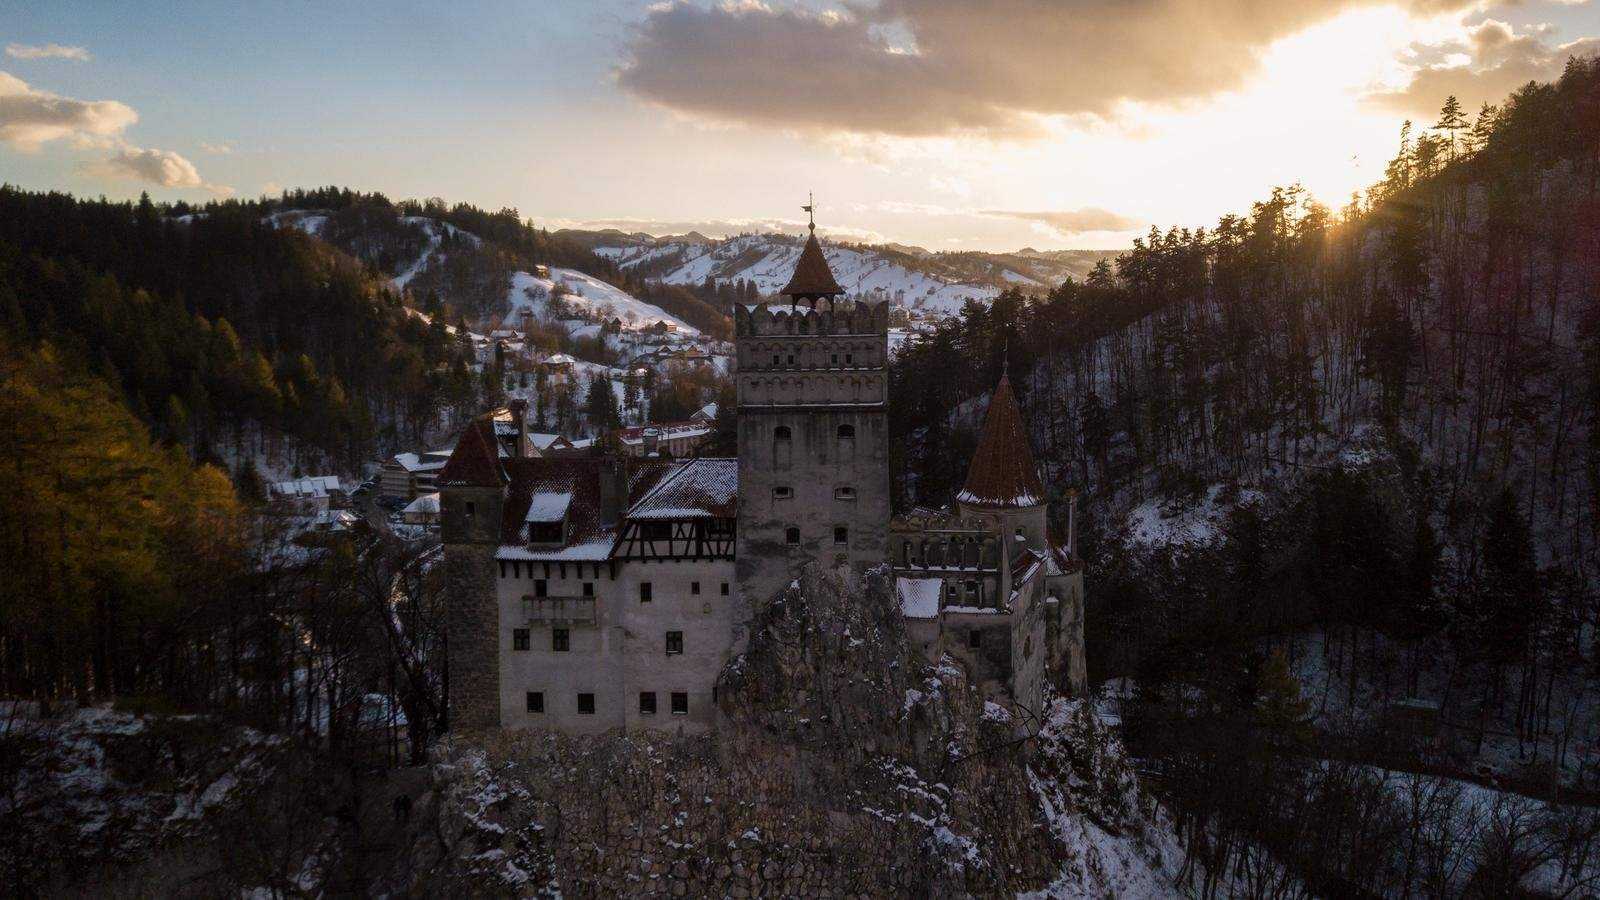 Как в румынии посмотреть на настоящий замок графа дракулы